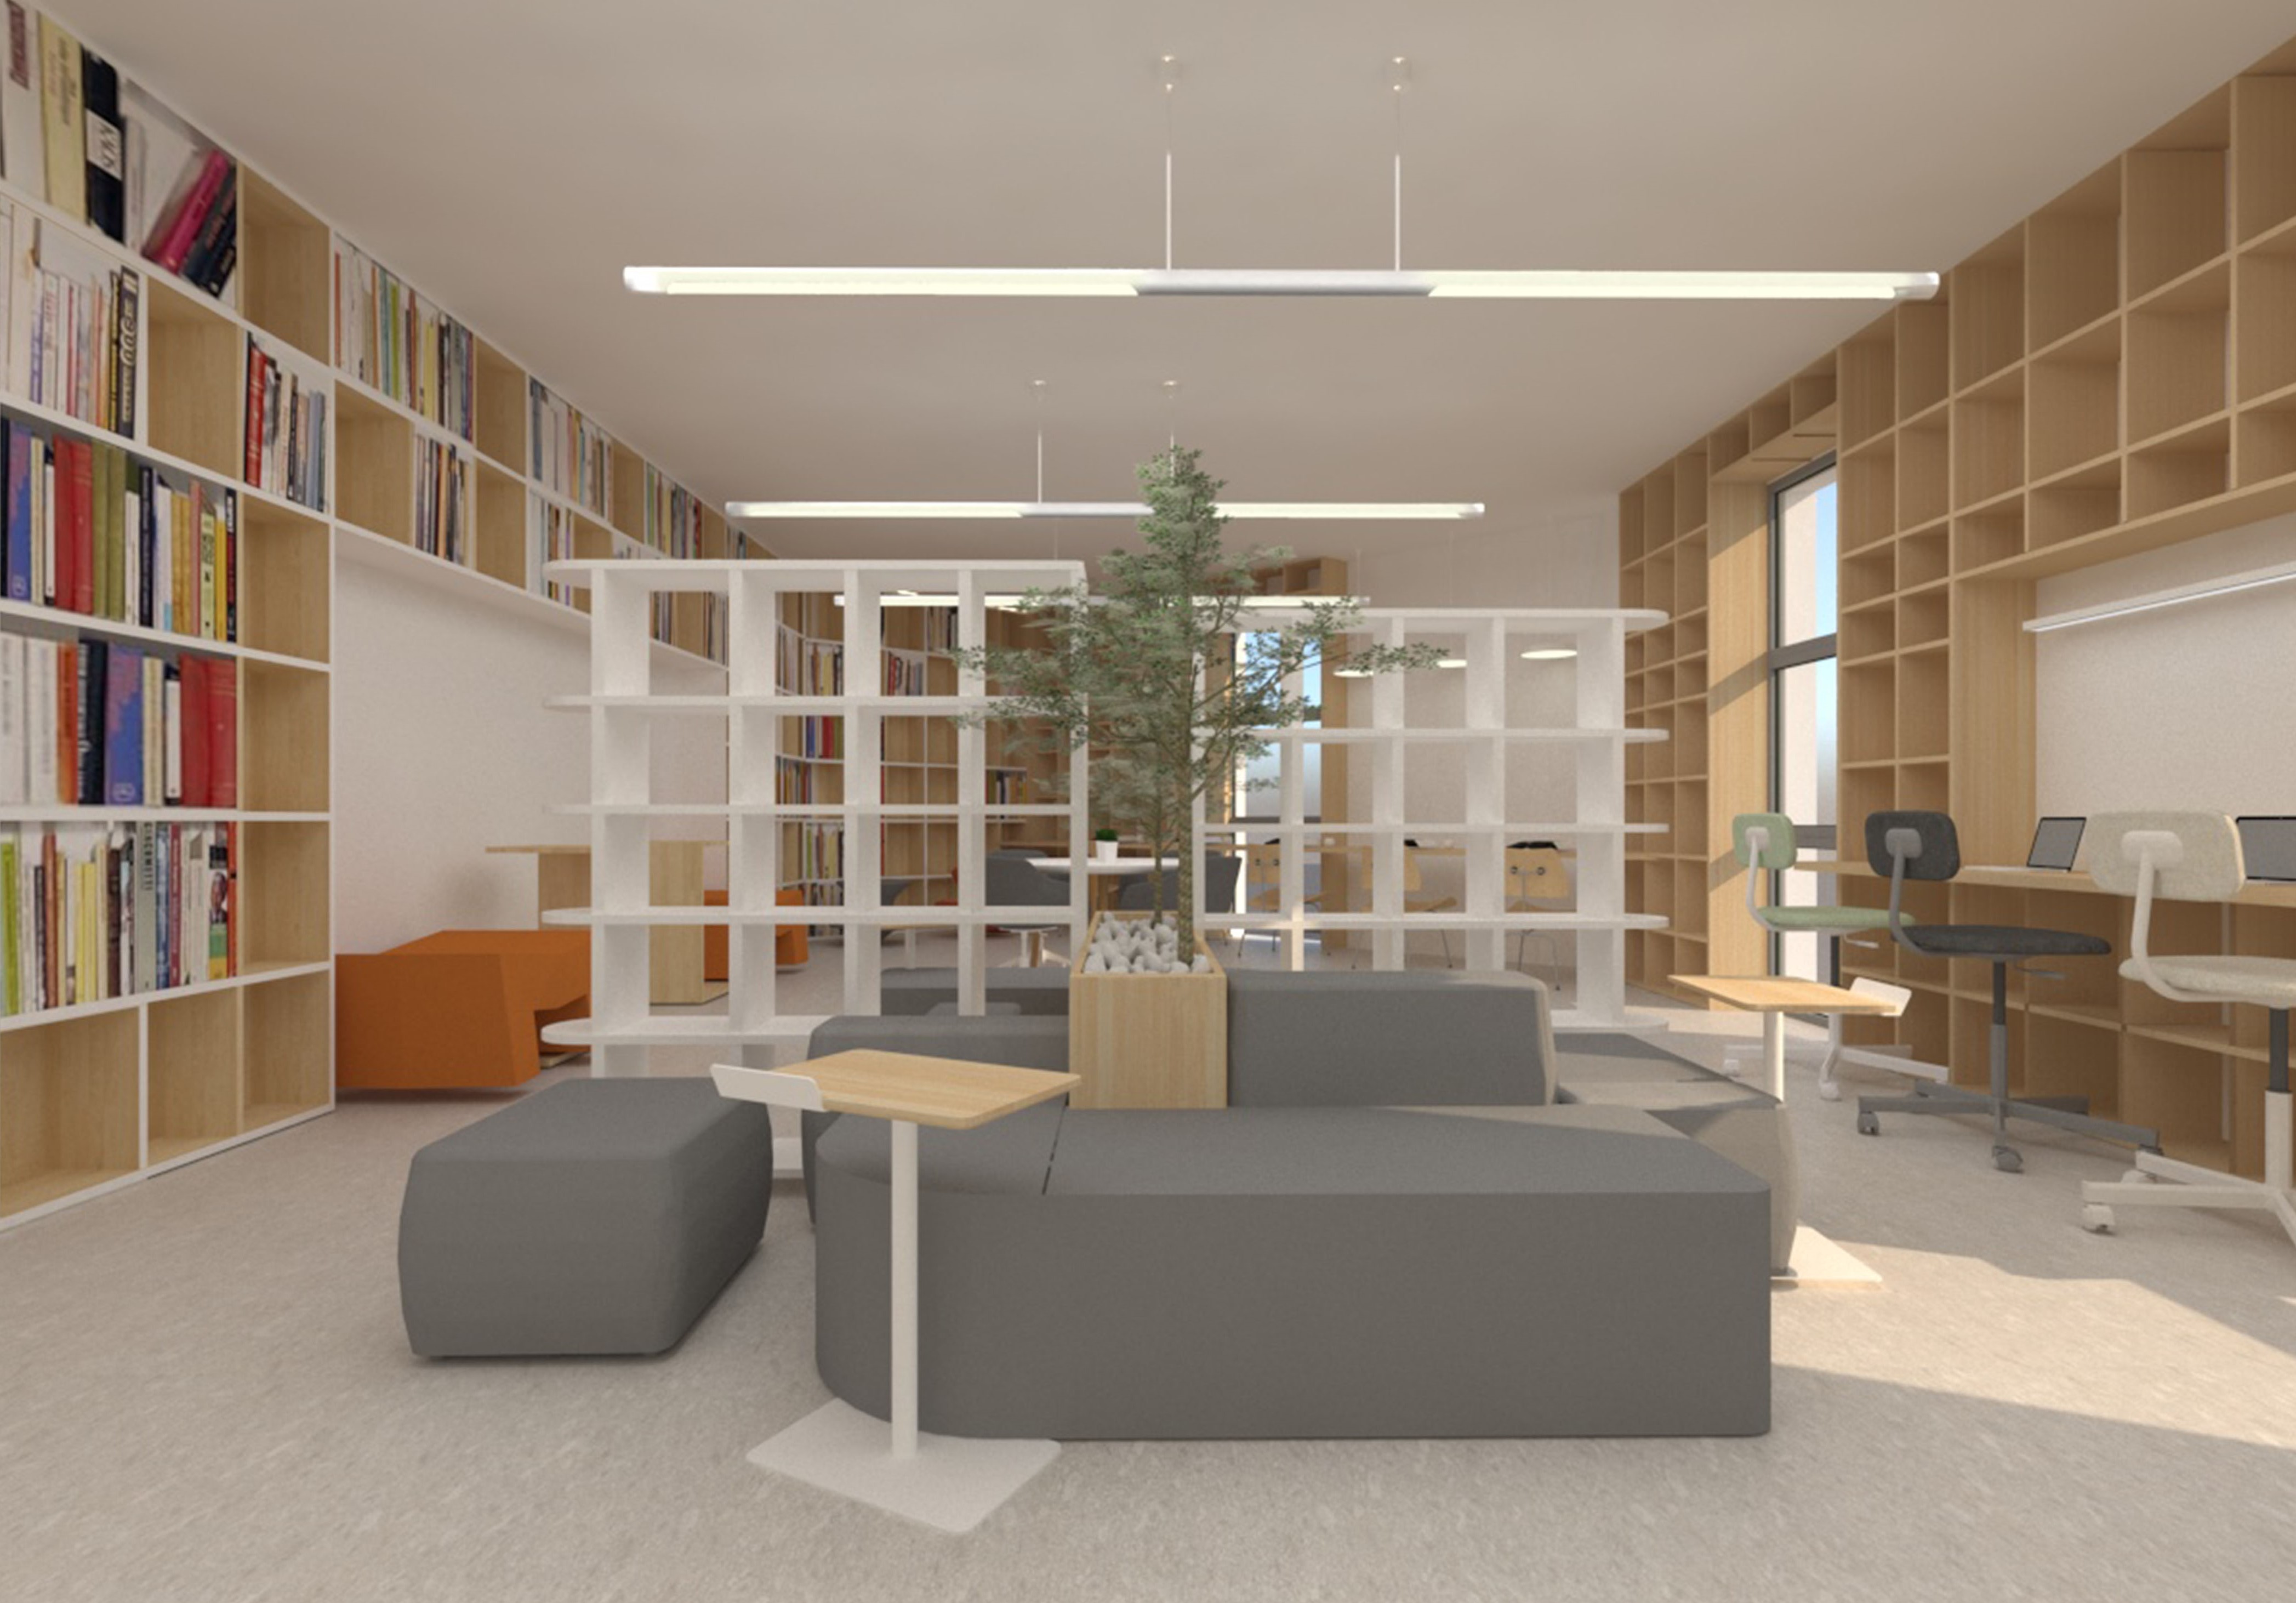 Ελασσόνα: Νέα δημοτική βιβλιοθήκη με την έγκριση της επιτροπής "Ελλάδα 2021"